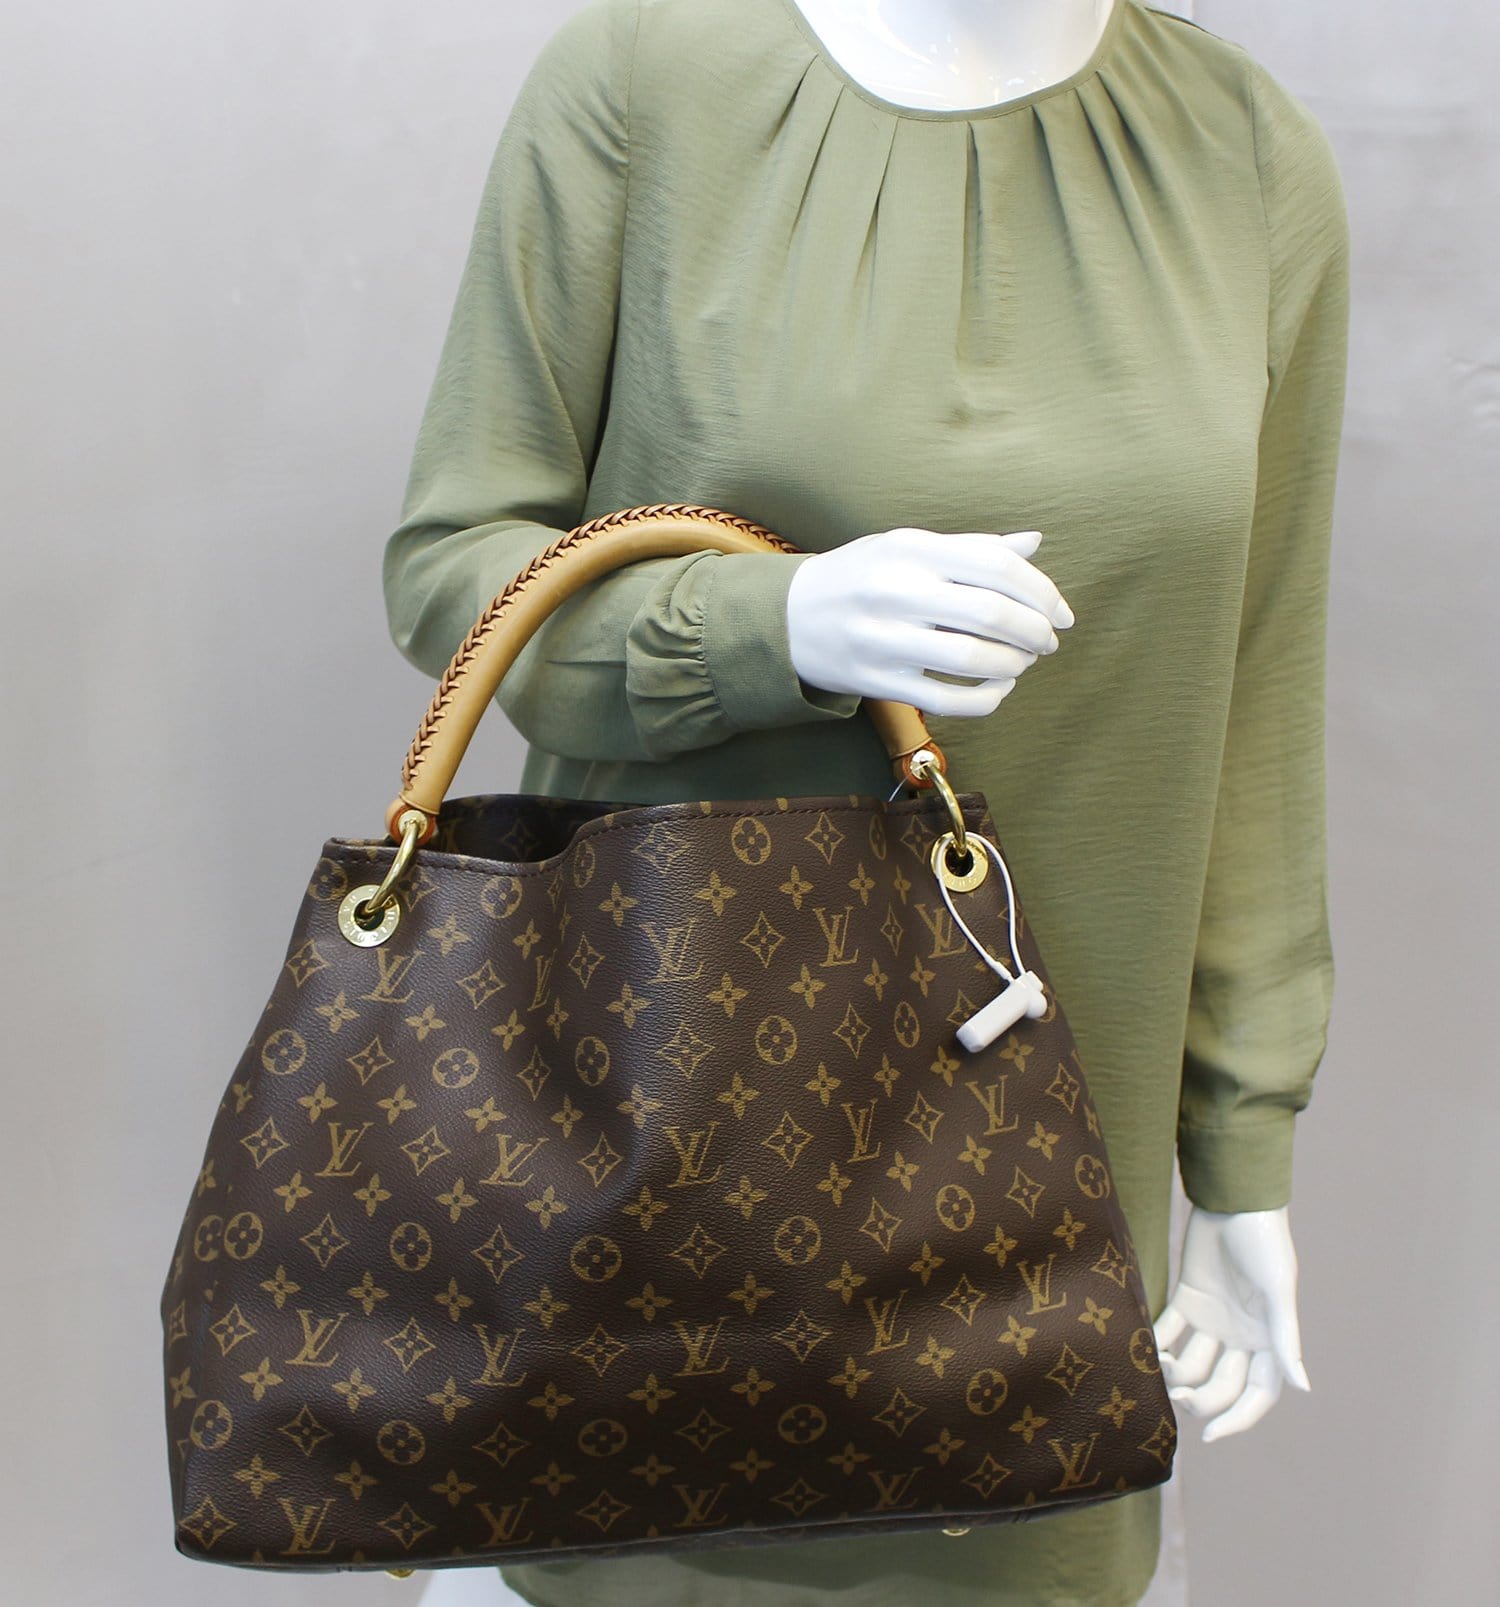 Authentic Louis Vuitton Artsy MM Monogram Canvas Shoulder Bag tote bag